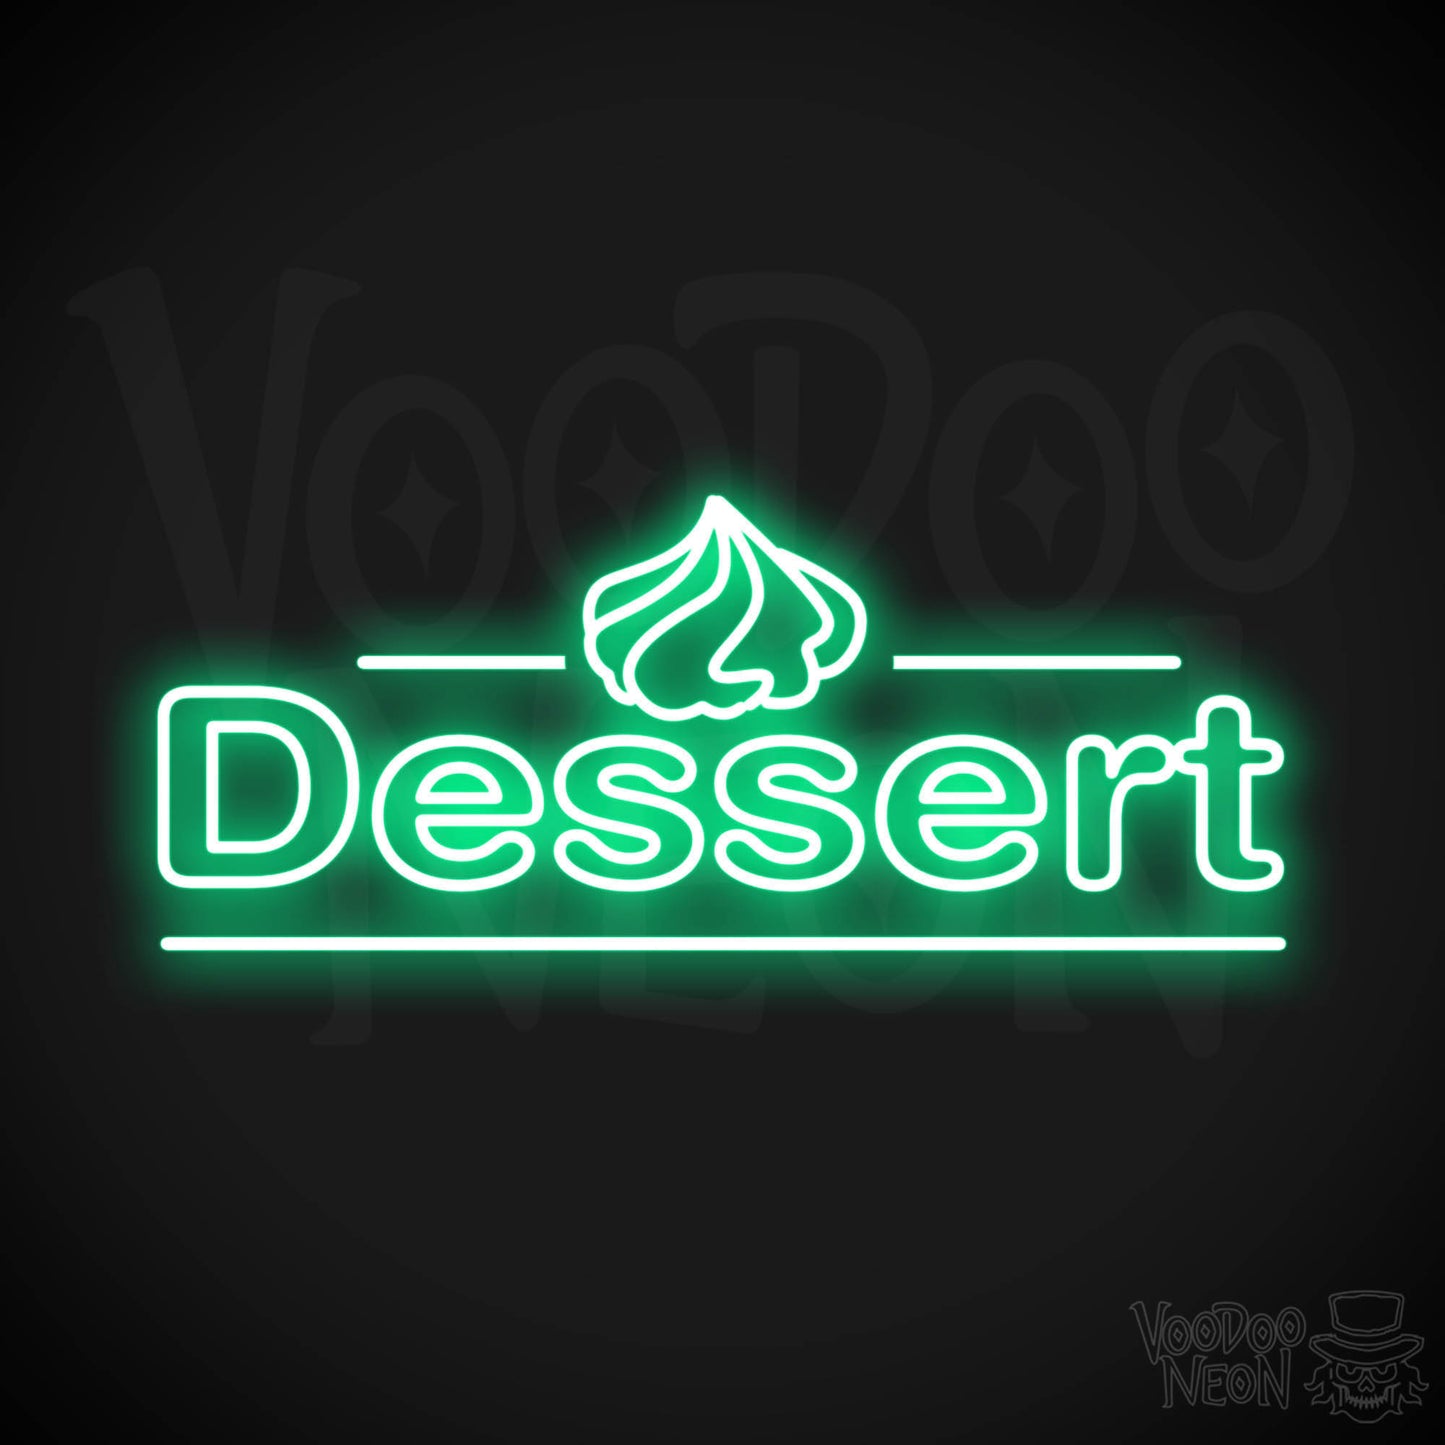 Dessert LED Neon - Green